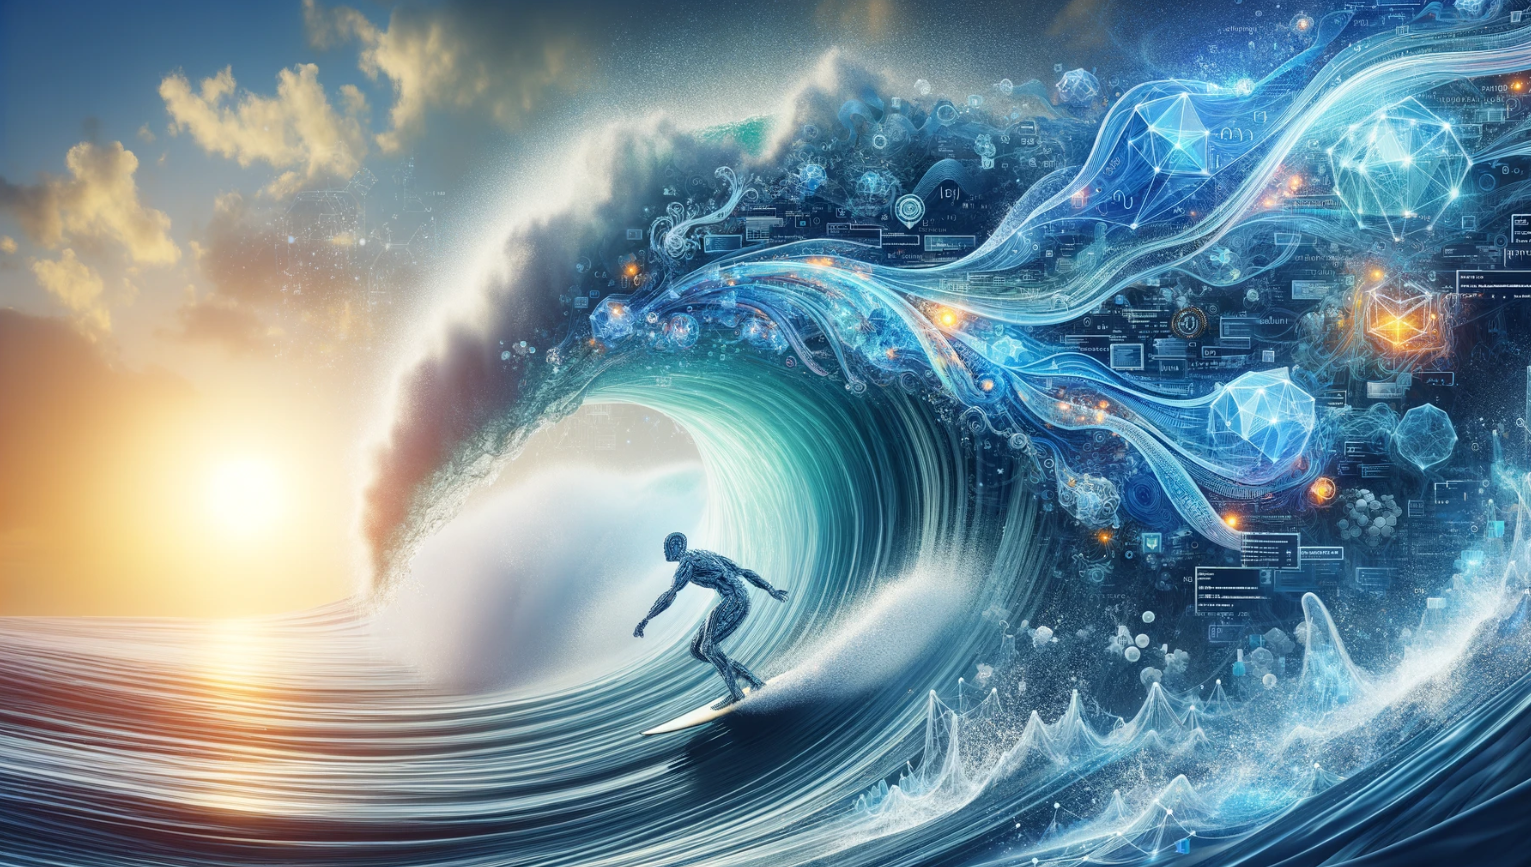 Künstliche Intelligenz ist eine Welle, die wir mit der  Begeisterung eines  Surfers angehen sollten